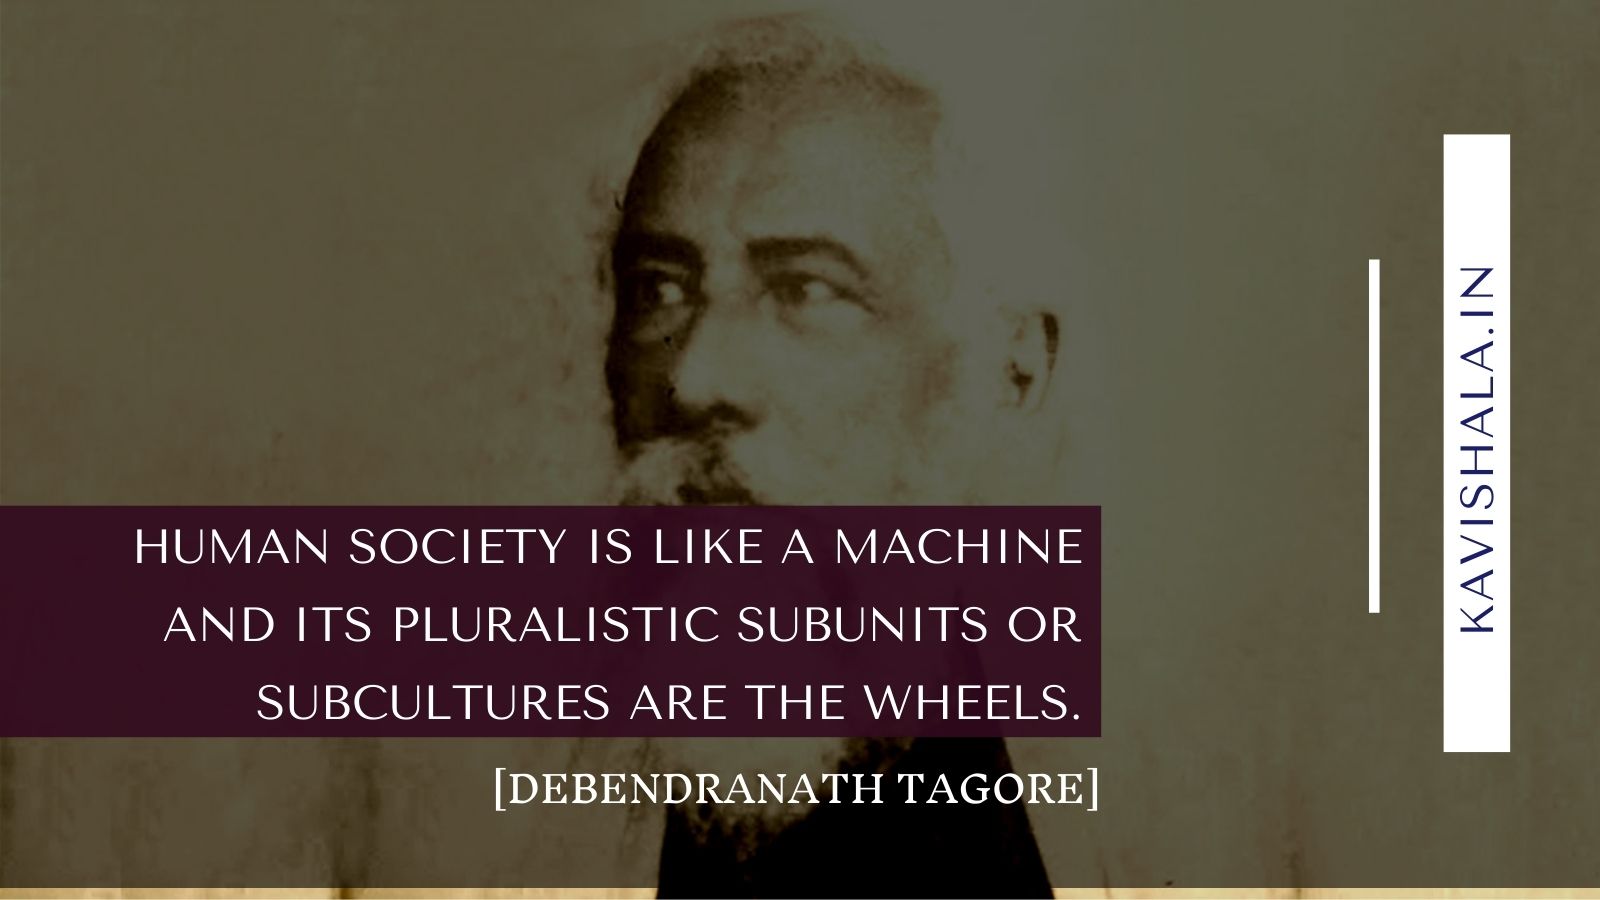 Debendranath Tagore's image